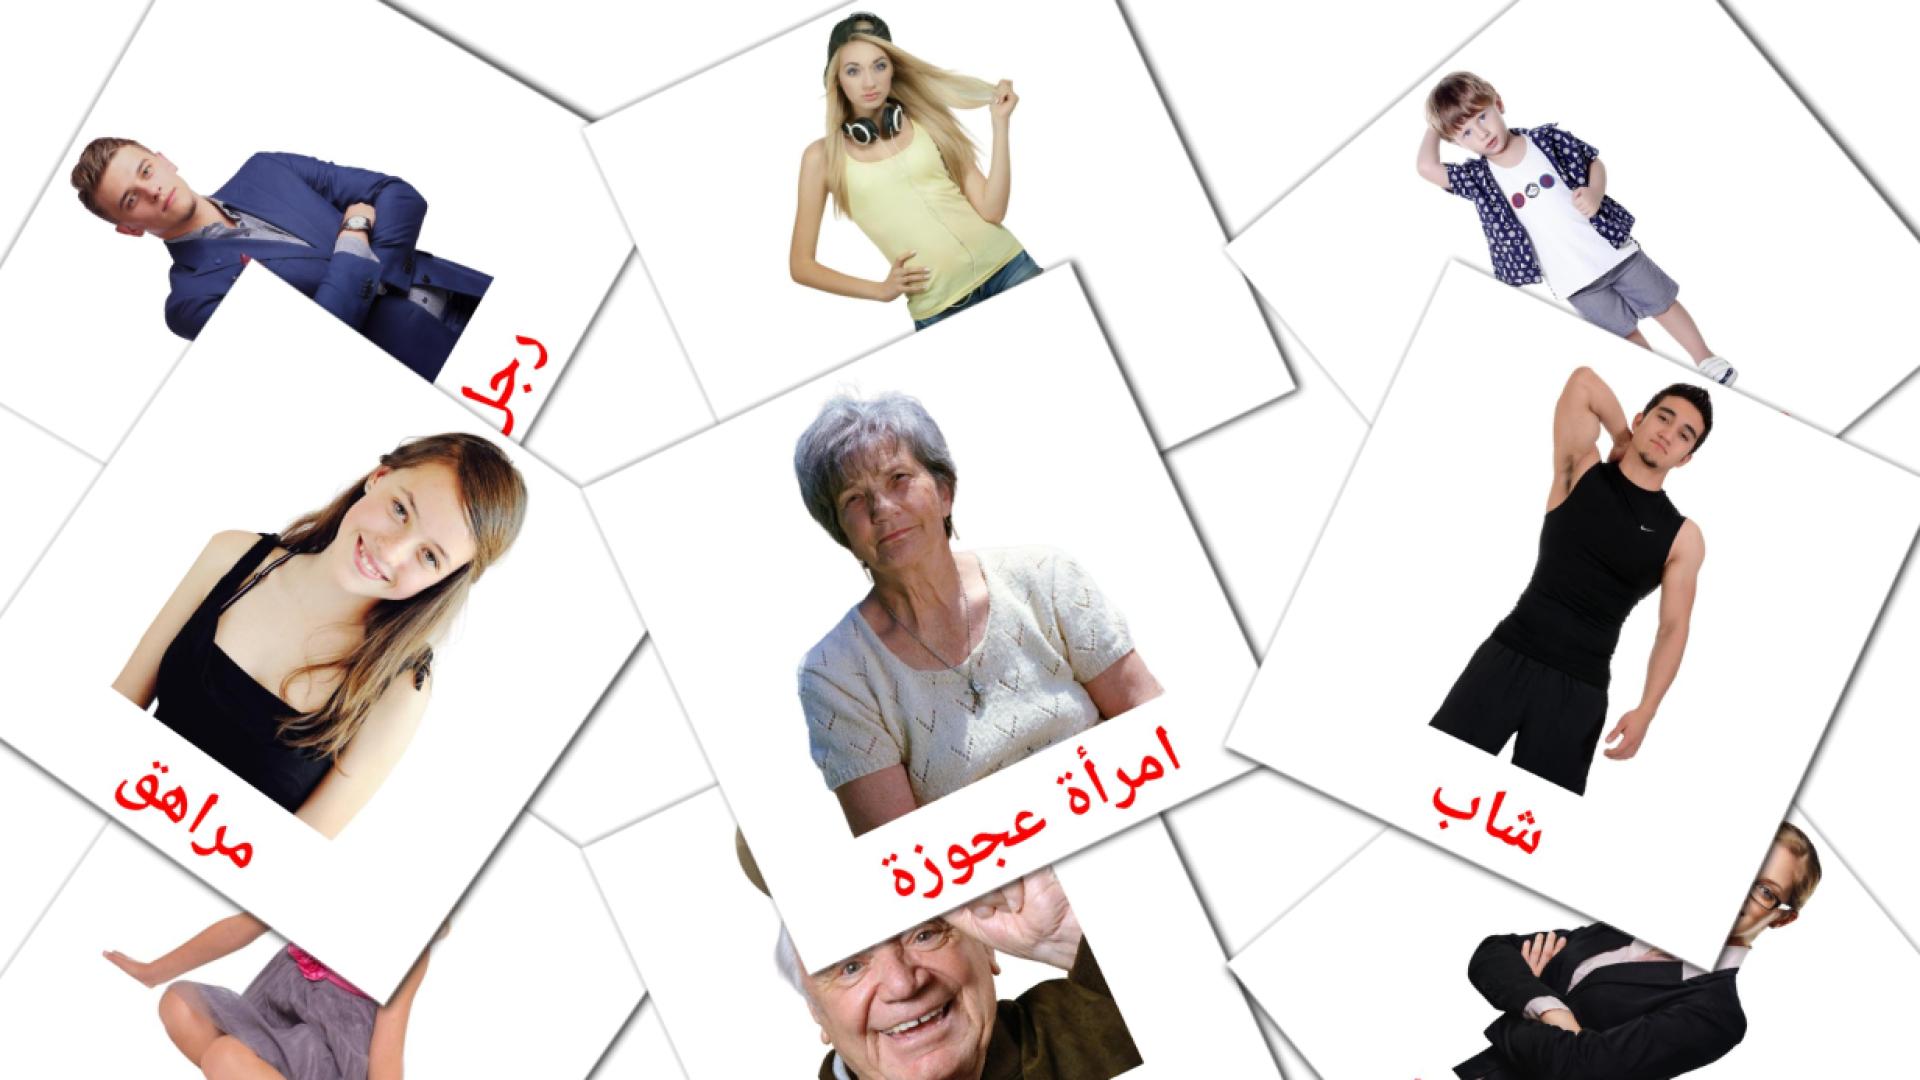 Stufe - Arabisch Vokabelkarten